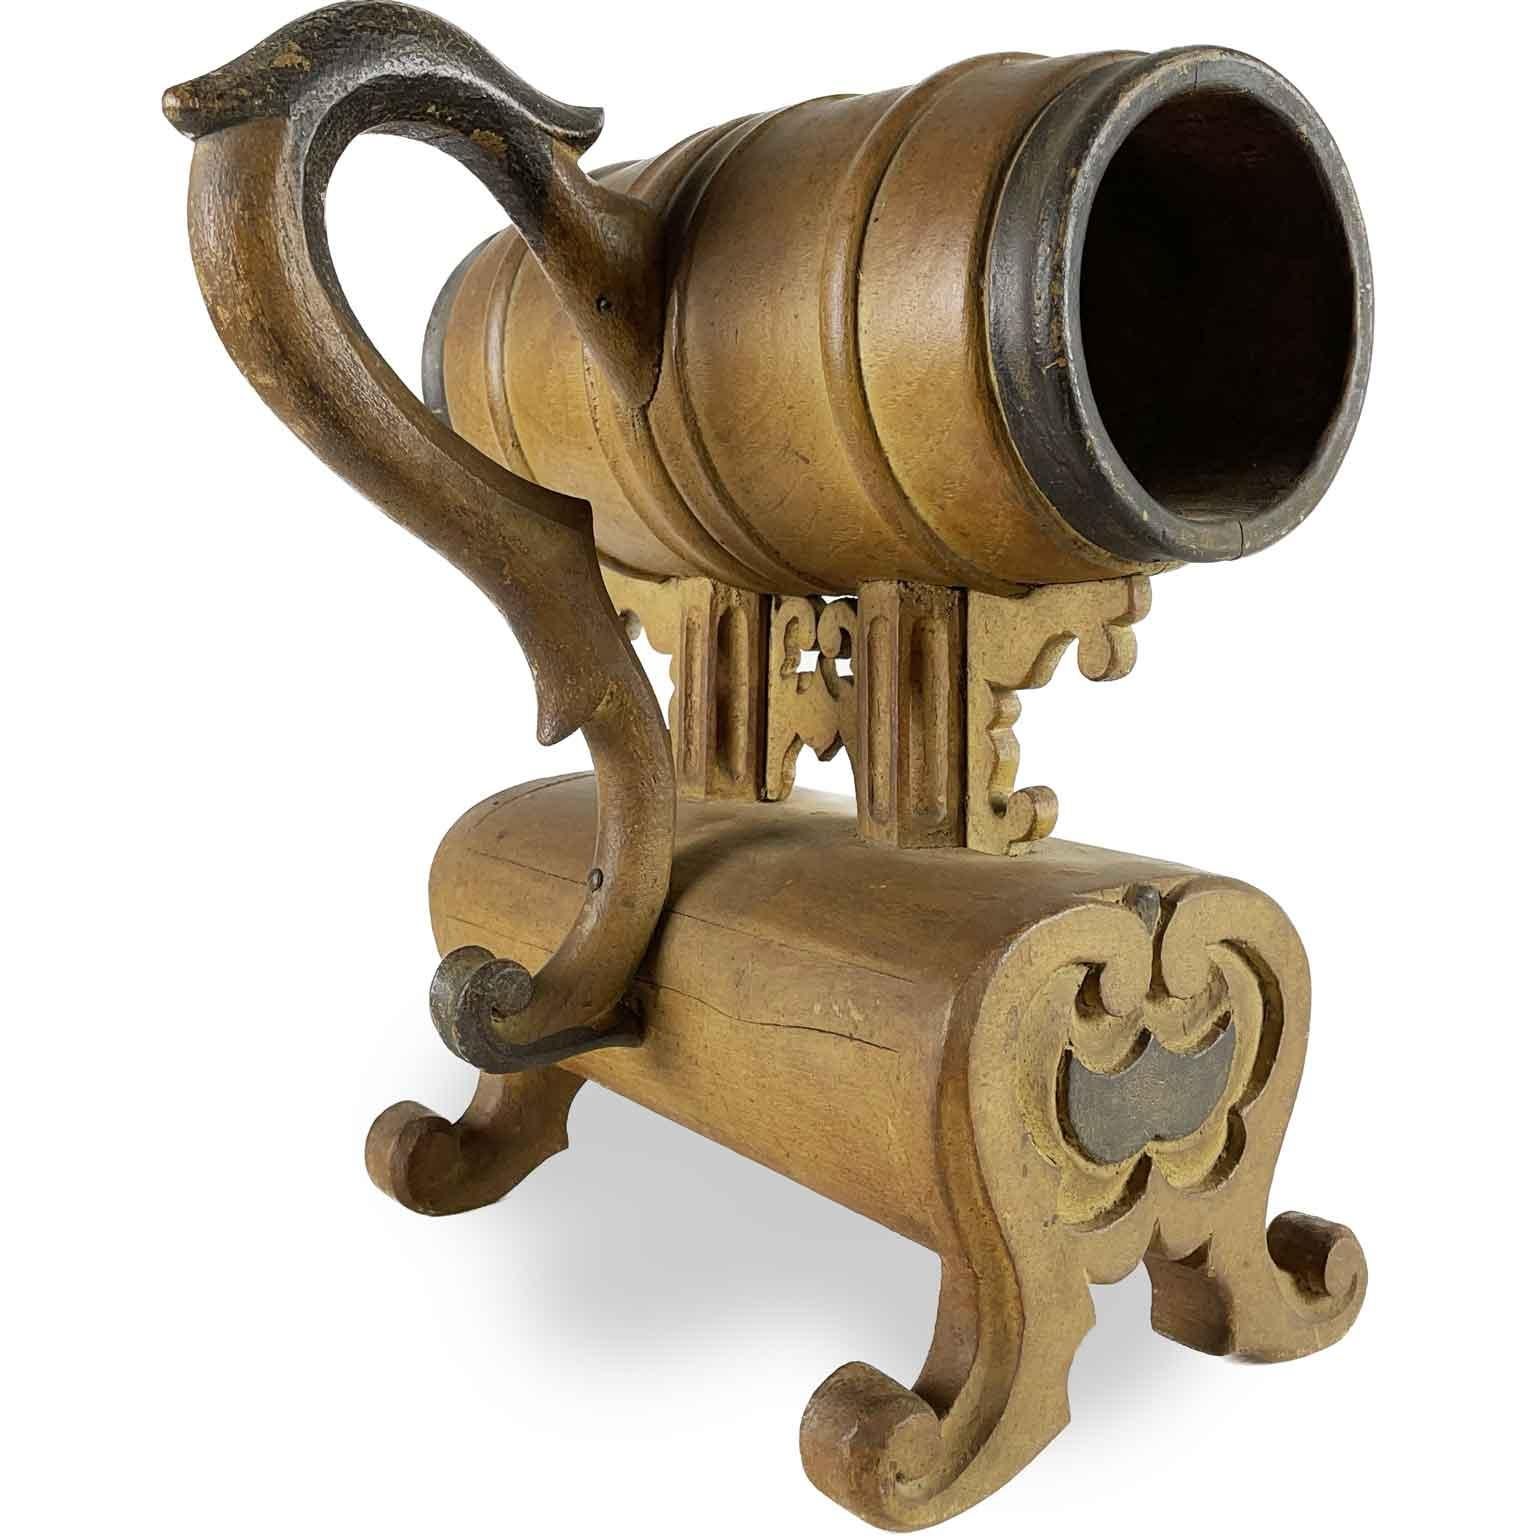 Urna de Voto de Cofradía italiana del siglo XIX de origen toscano realizada con madera de álamo torneada y tallada. El cuerpo central en forma de tonel, en el que se introducían las manos para introducir la papeleta de voto en uno de los dos